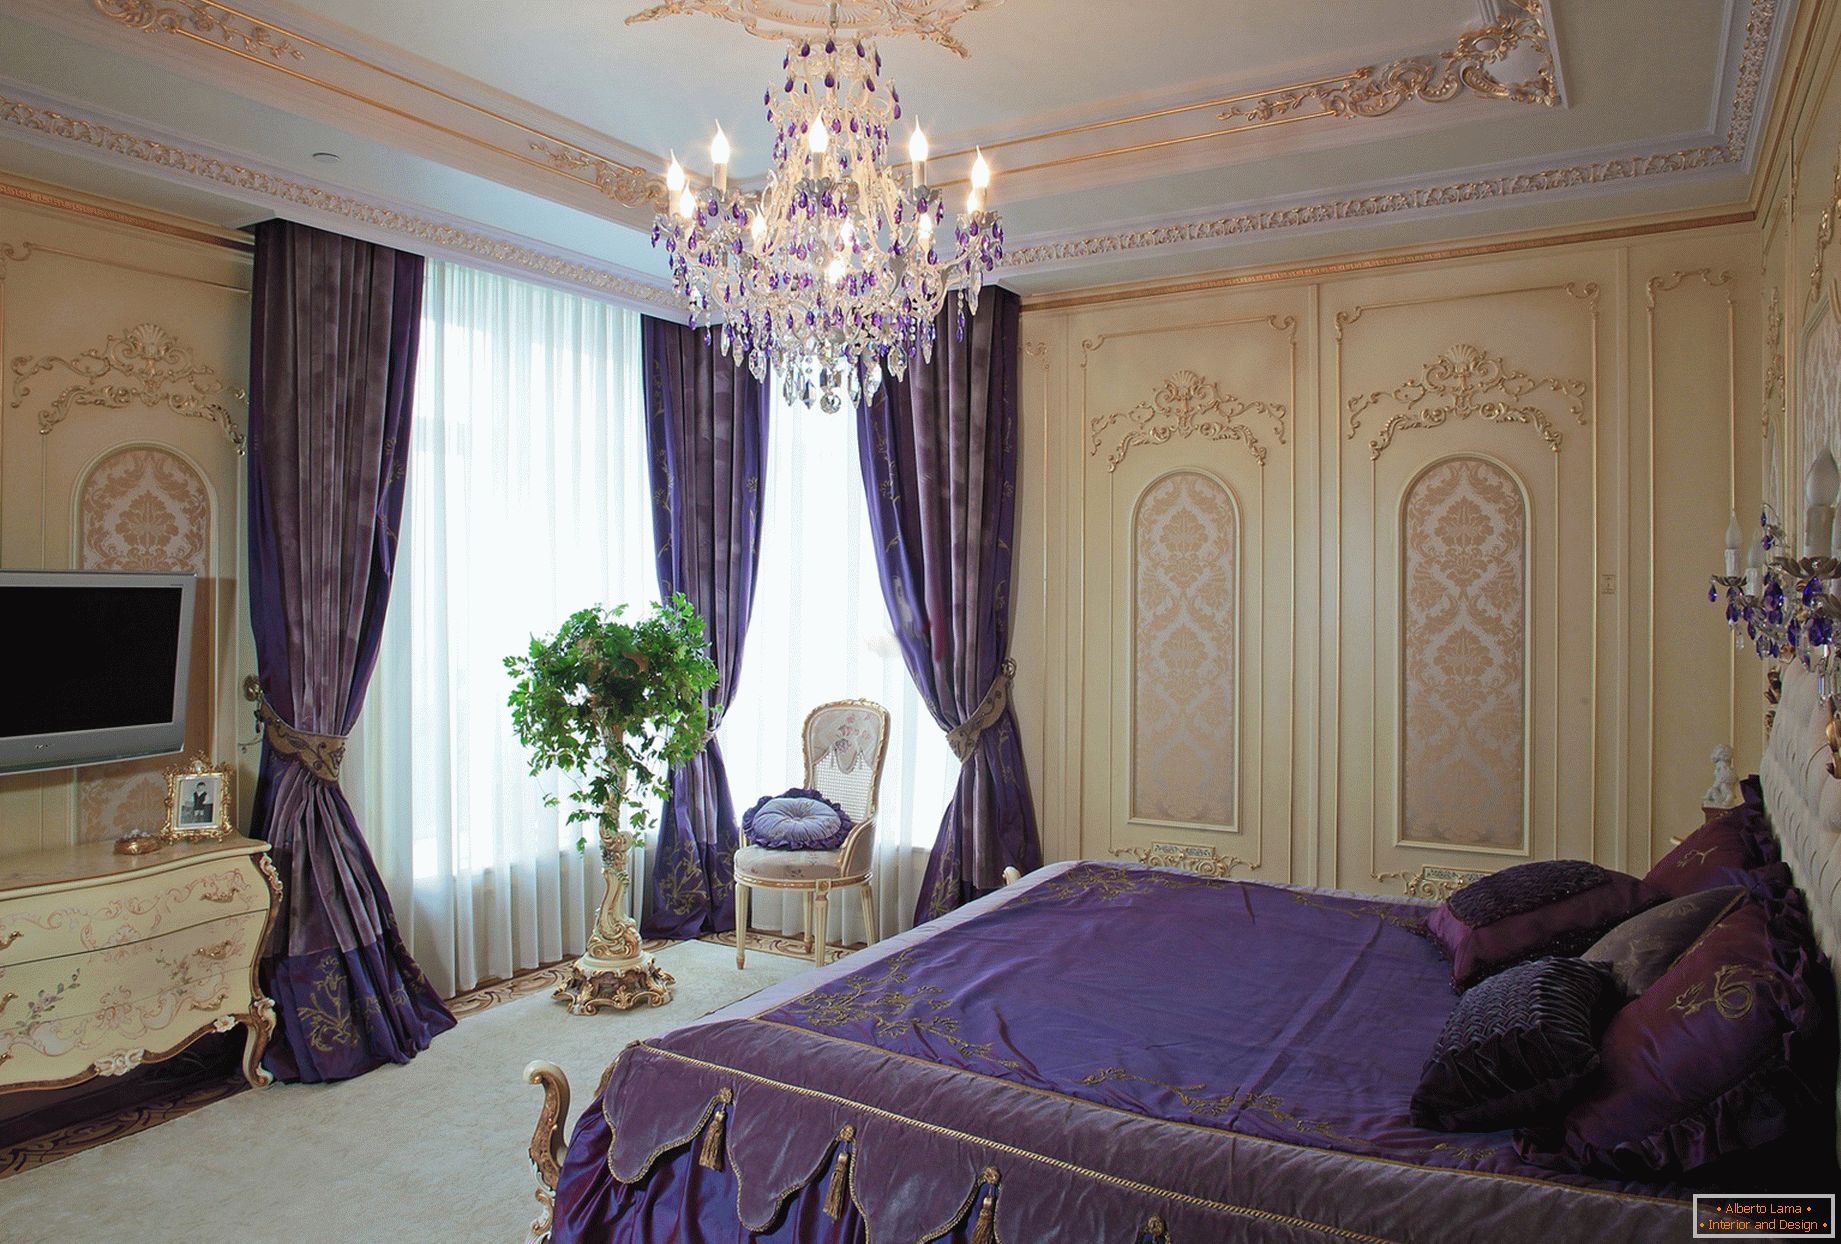 Elegante camera da letto in stile barocco. Un concetto di design sottile: le tende viola scuro si combinano con le lenzuola abbinate al tono.